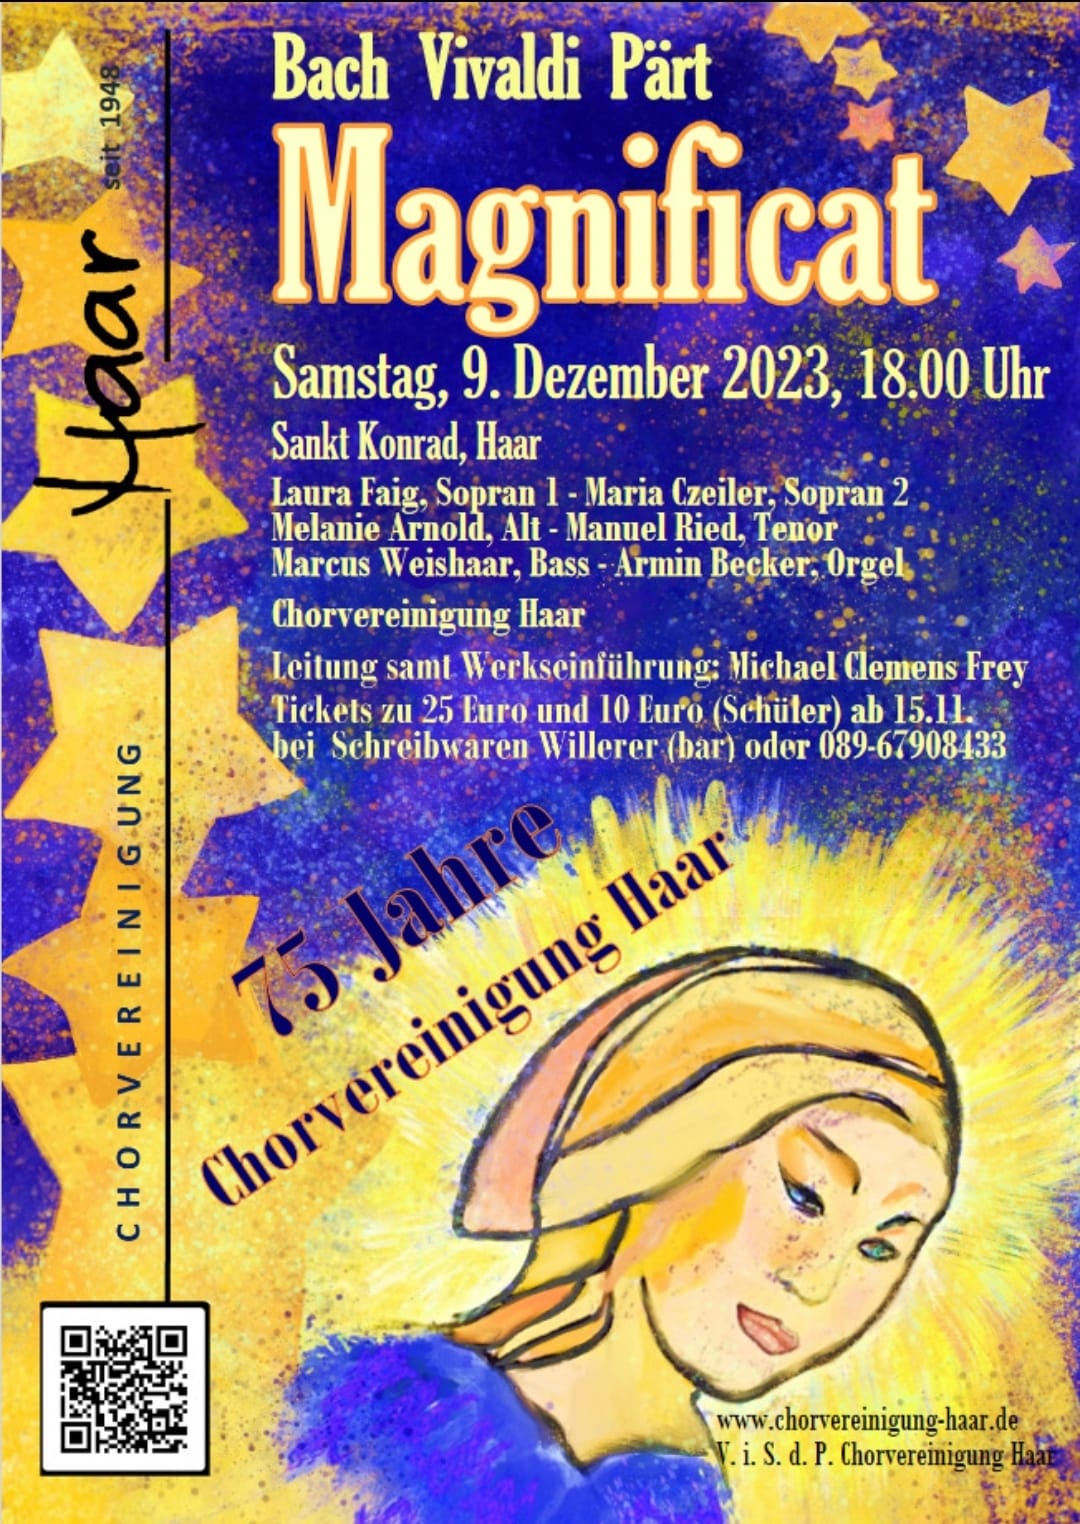 magnifcat 09.12.23g